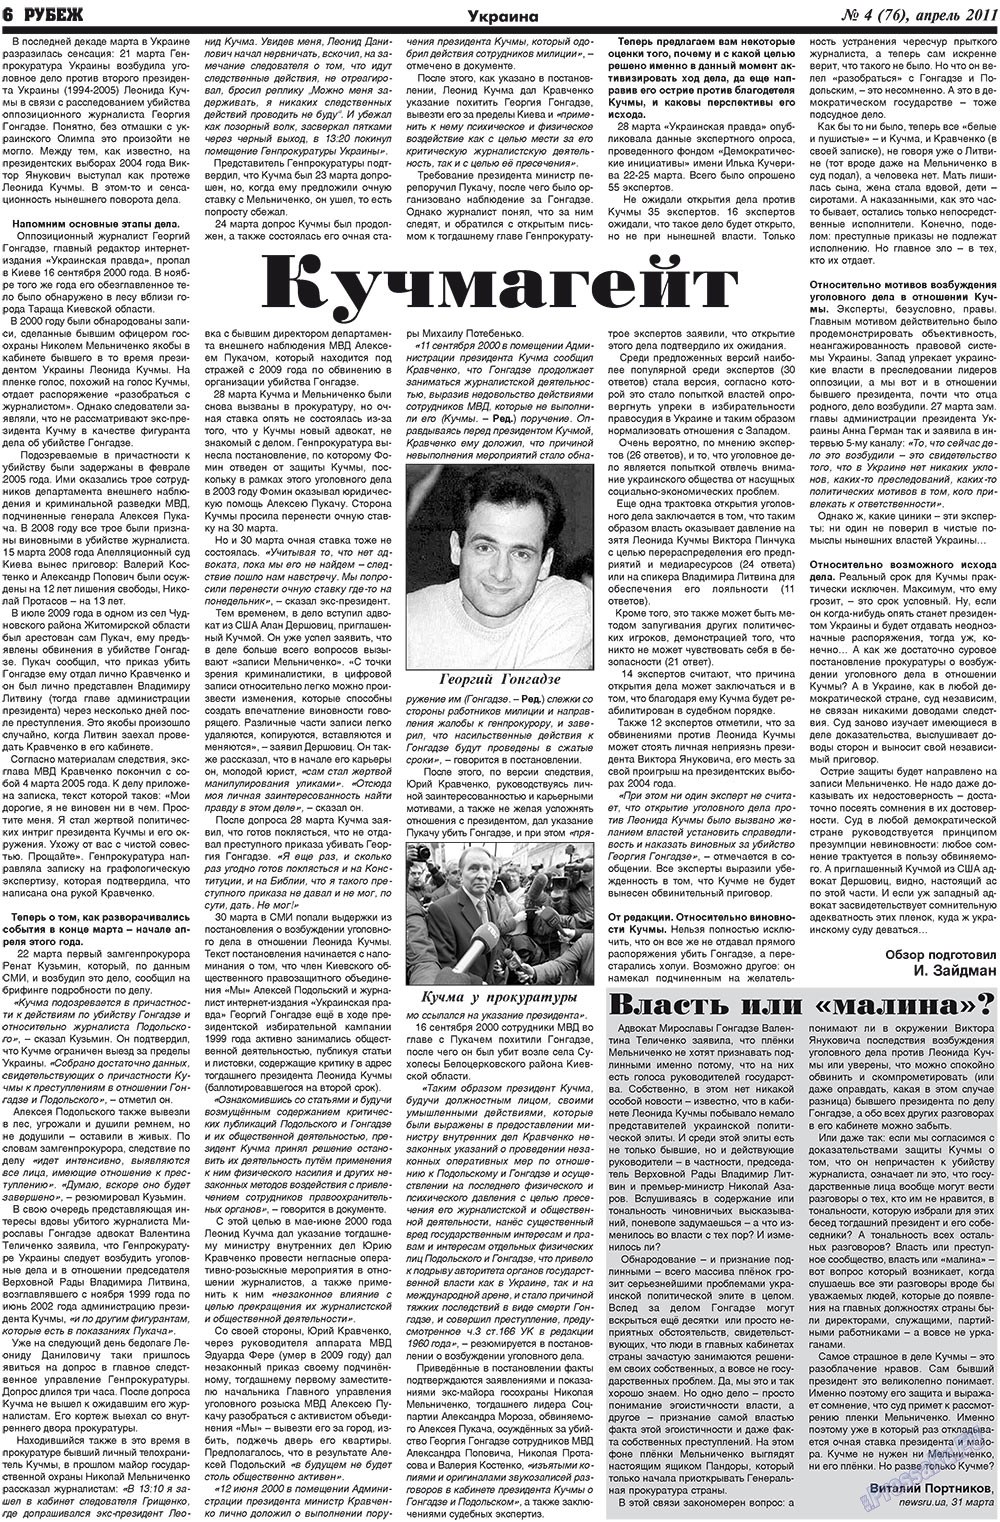 Рубеж (газета). 2011 год, номер 4, стр. 6